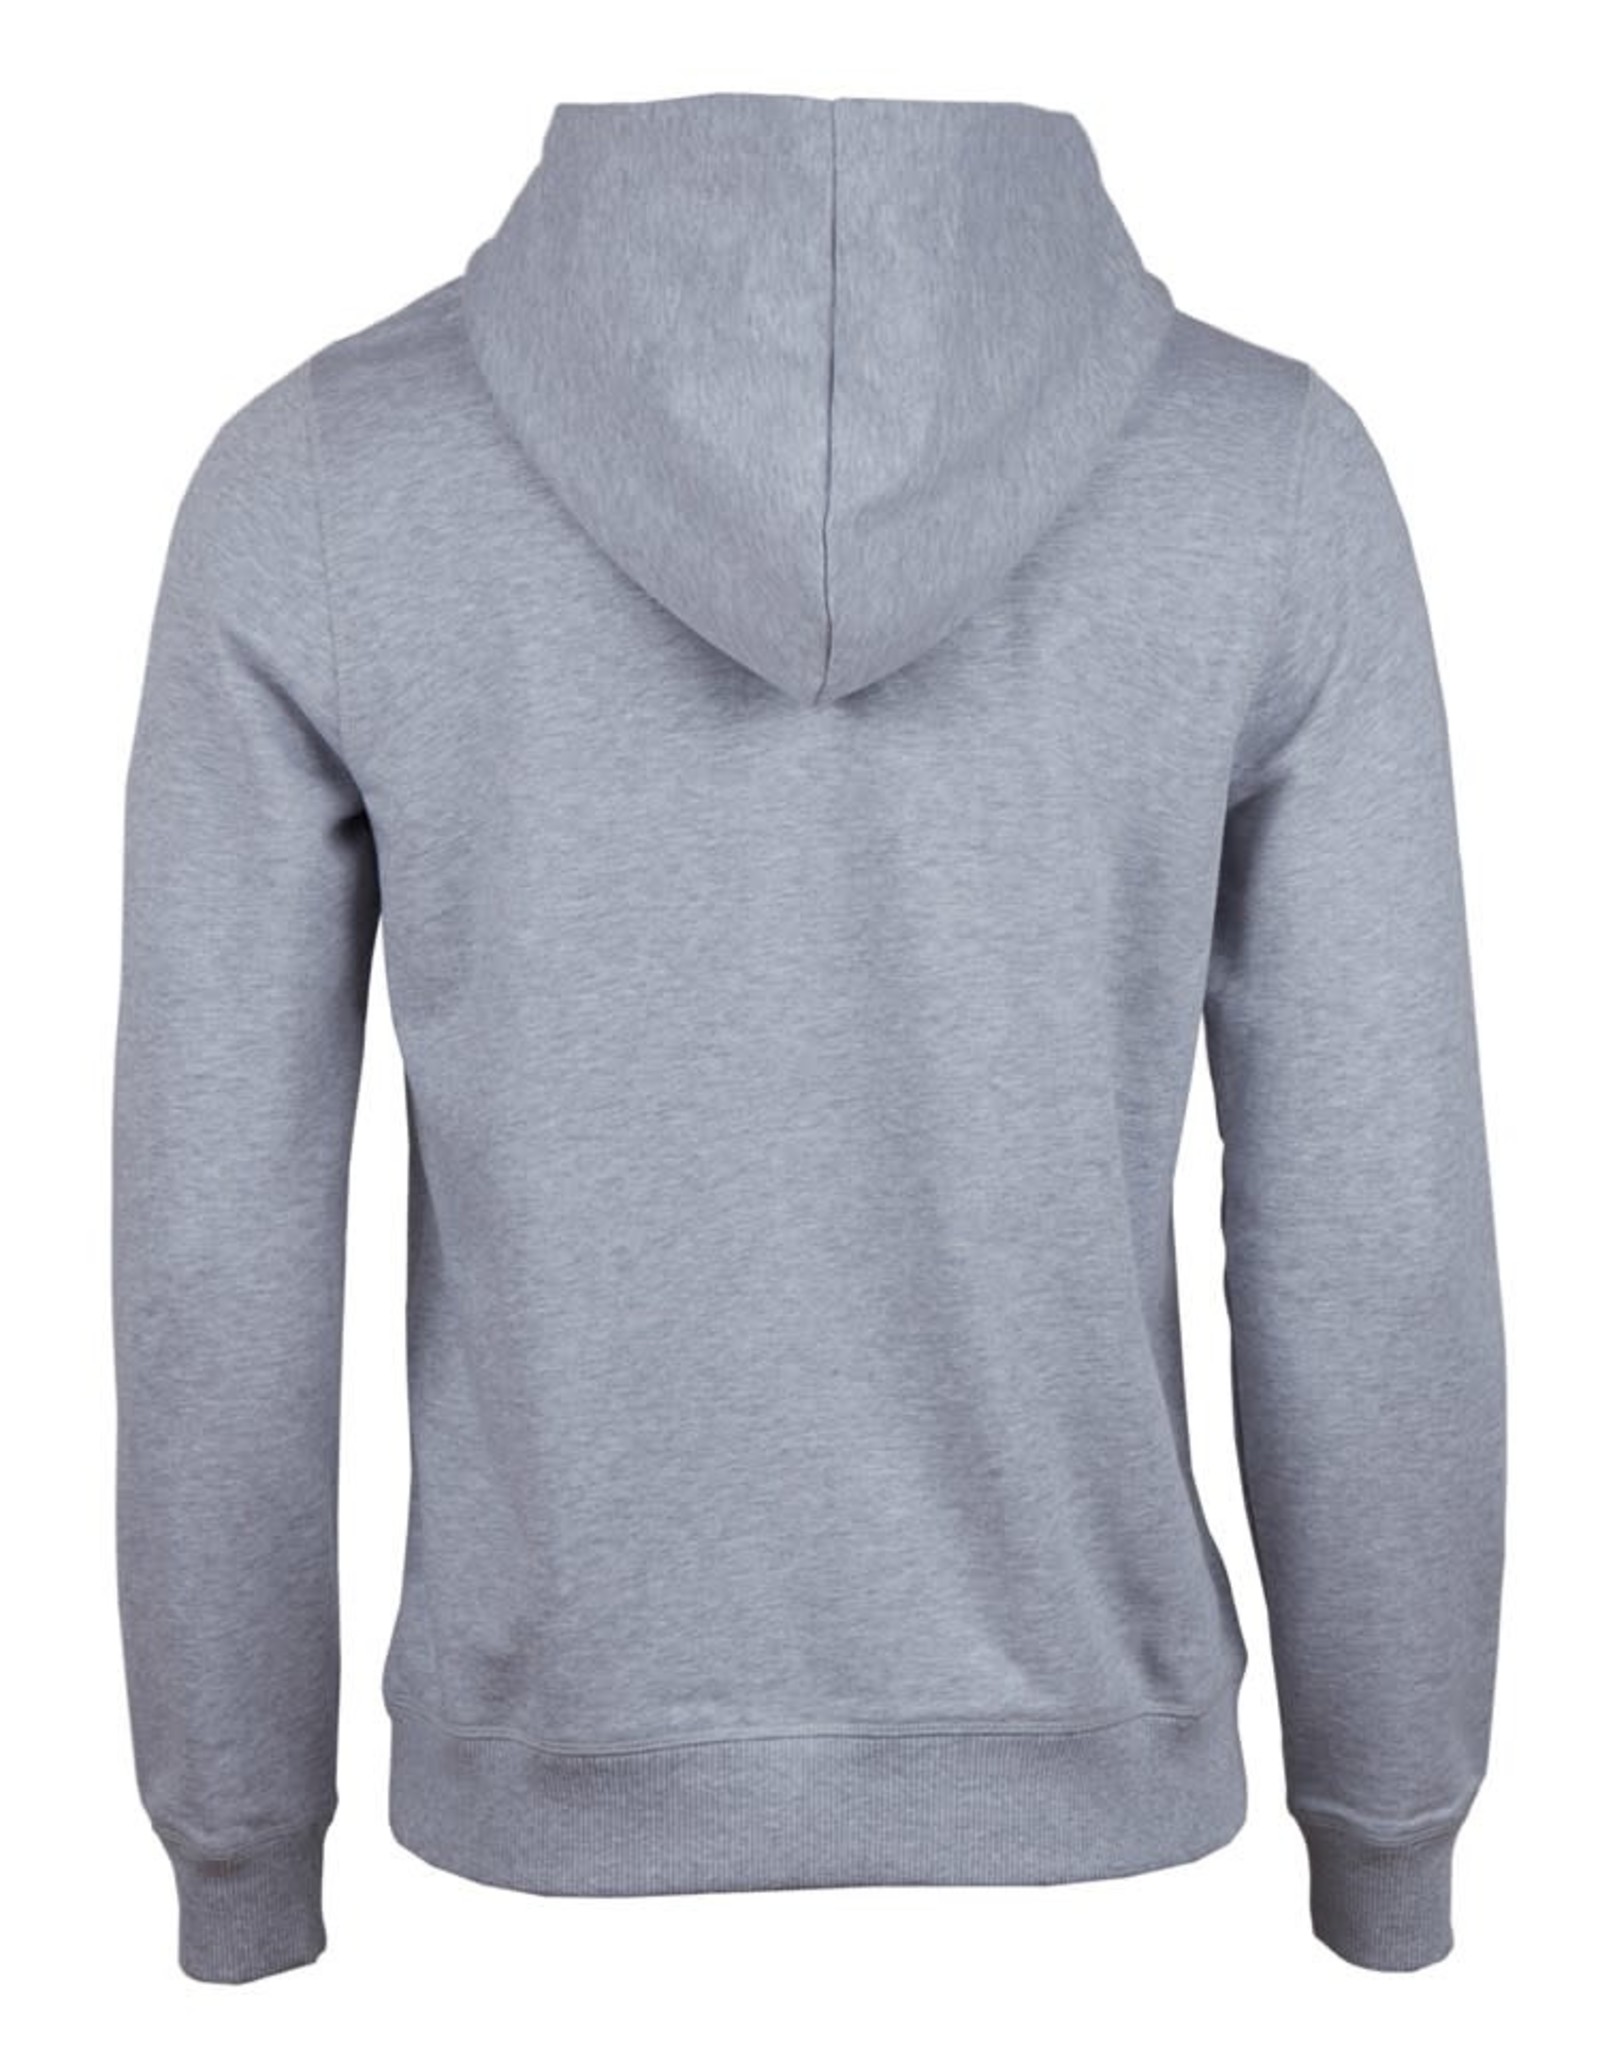 Stenströms Stenströms sweatshirt hoodie grijs 440046-2487/300